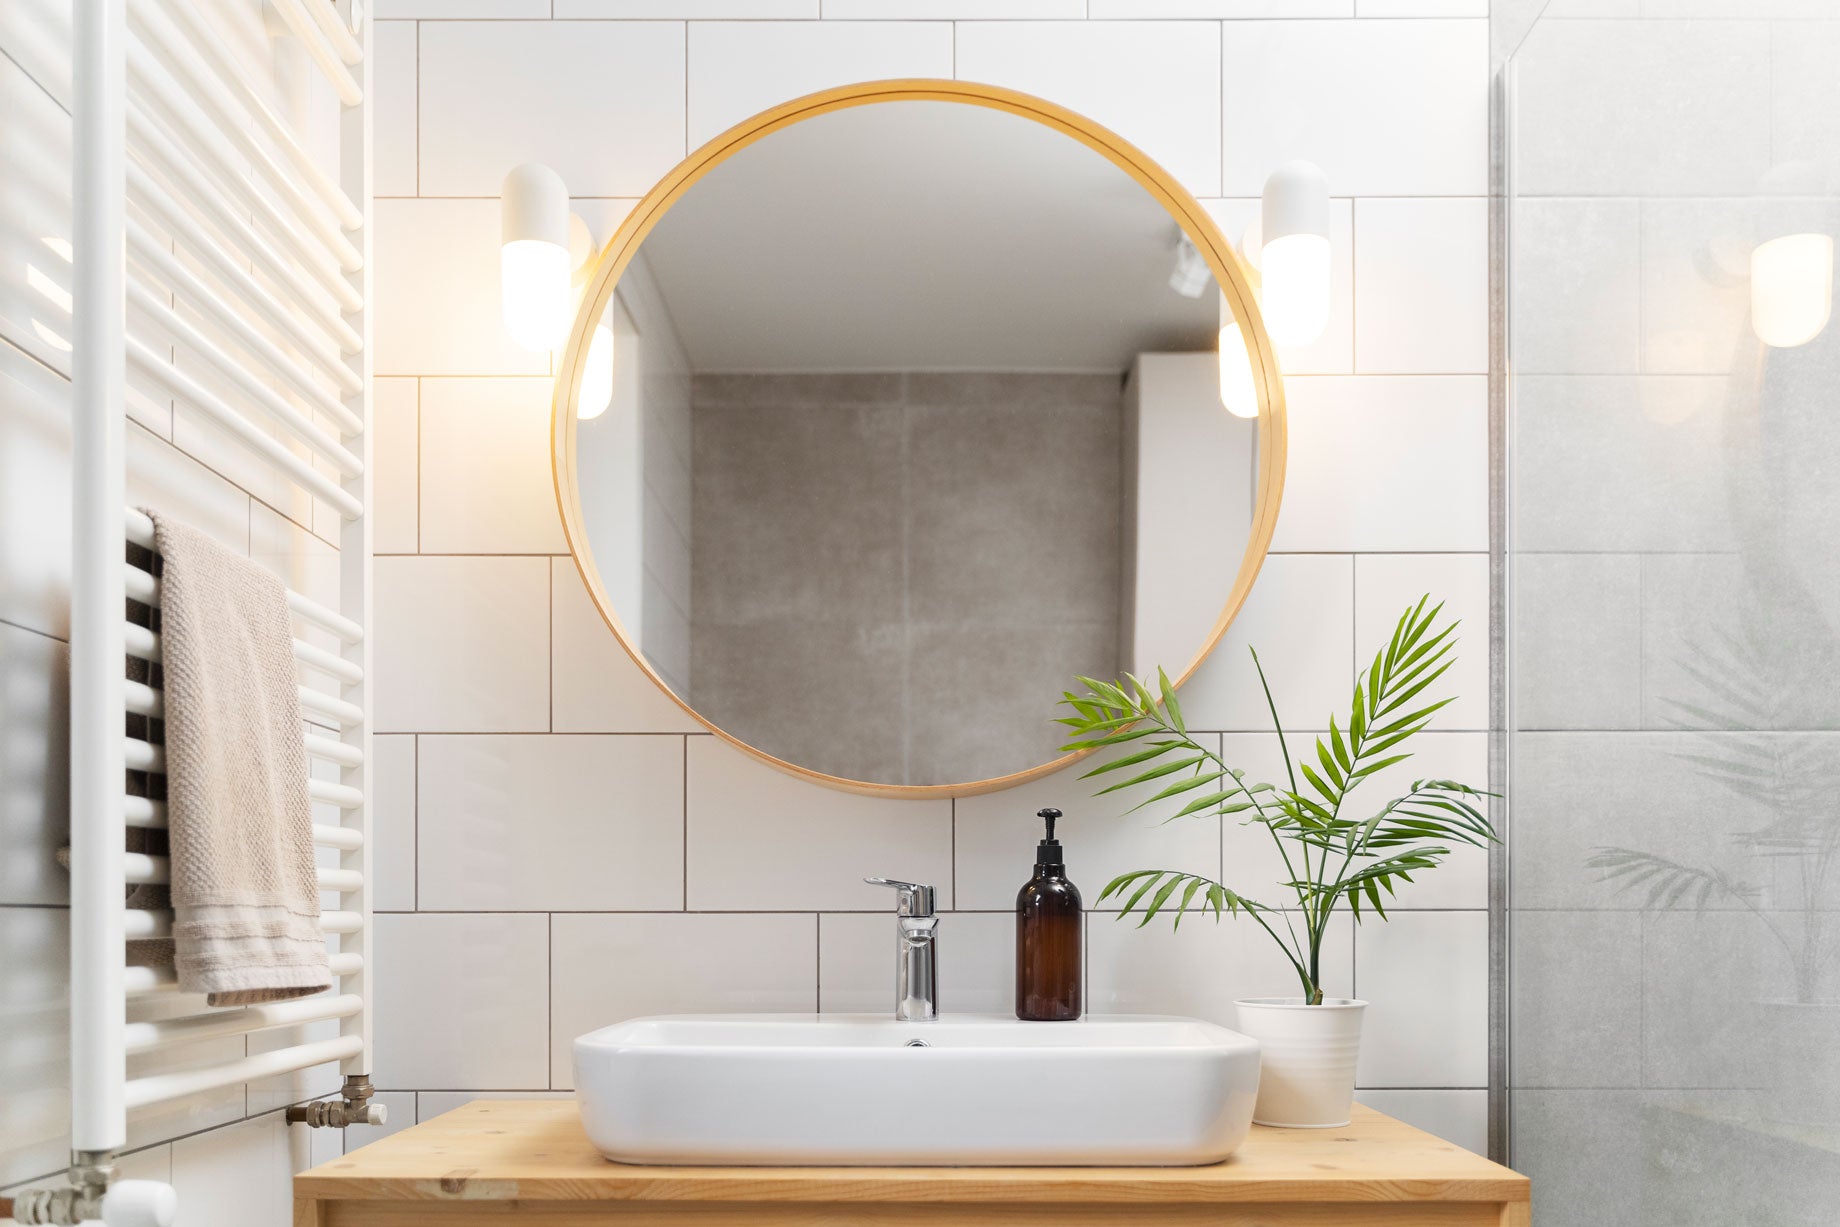 5 des raisons d'avoir une salle de bain design & pratique